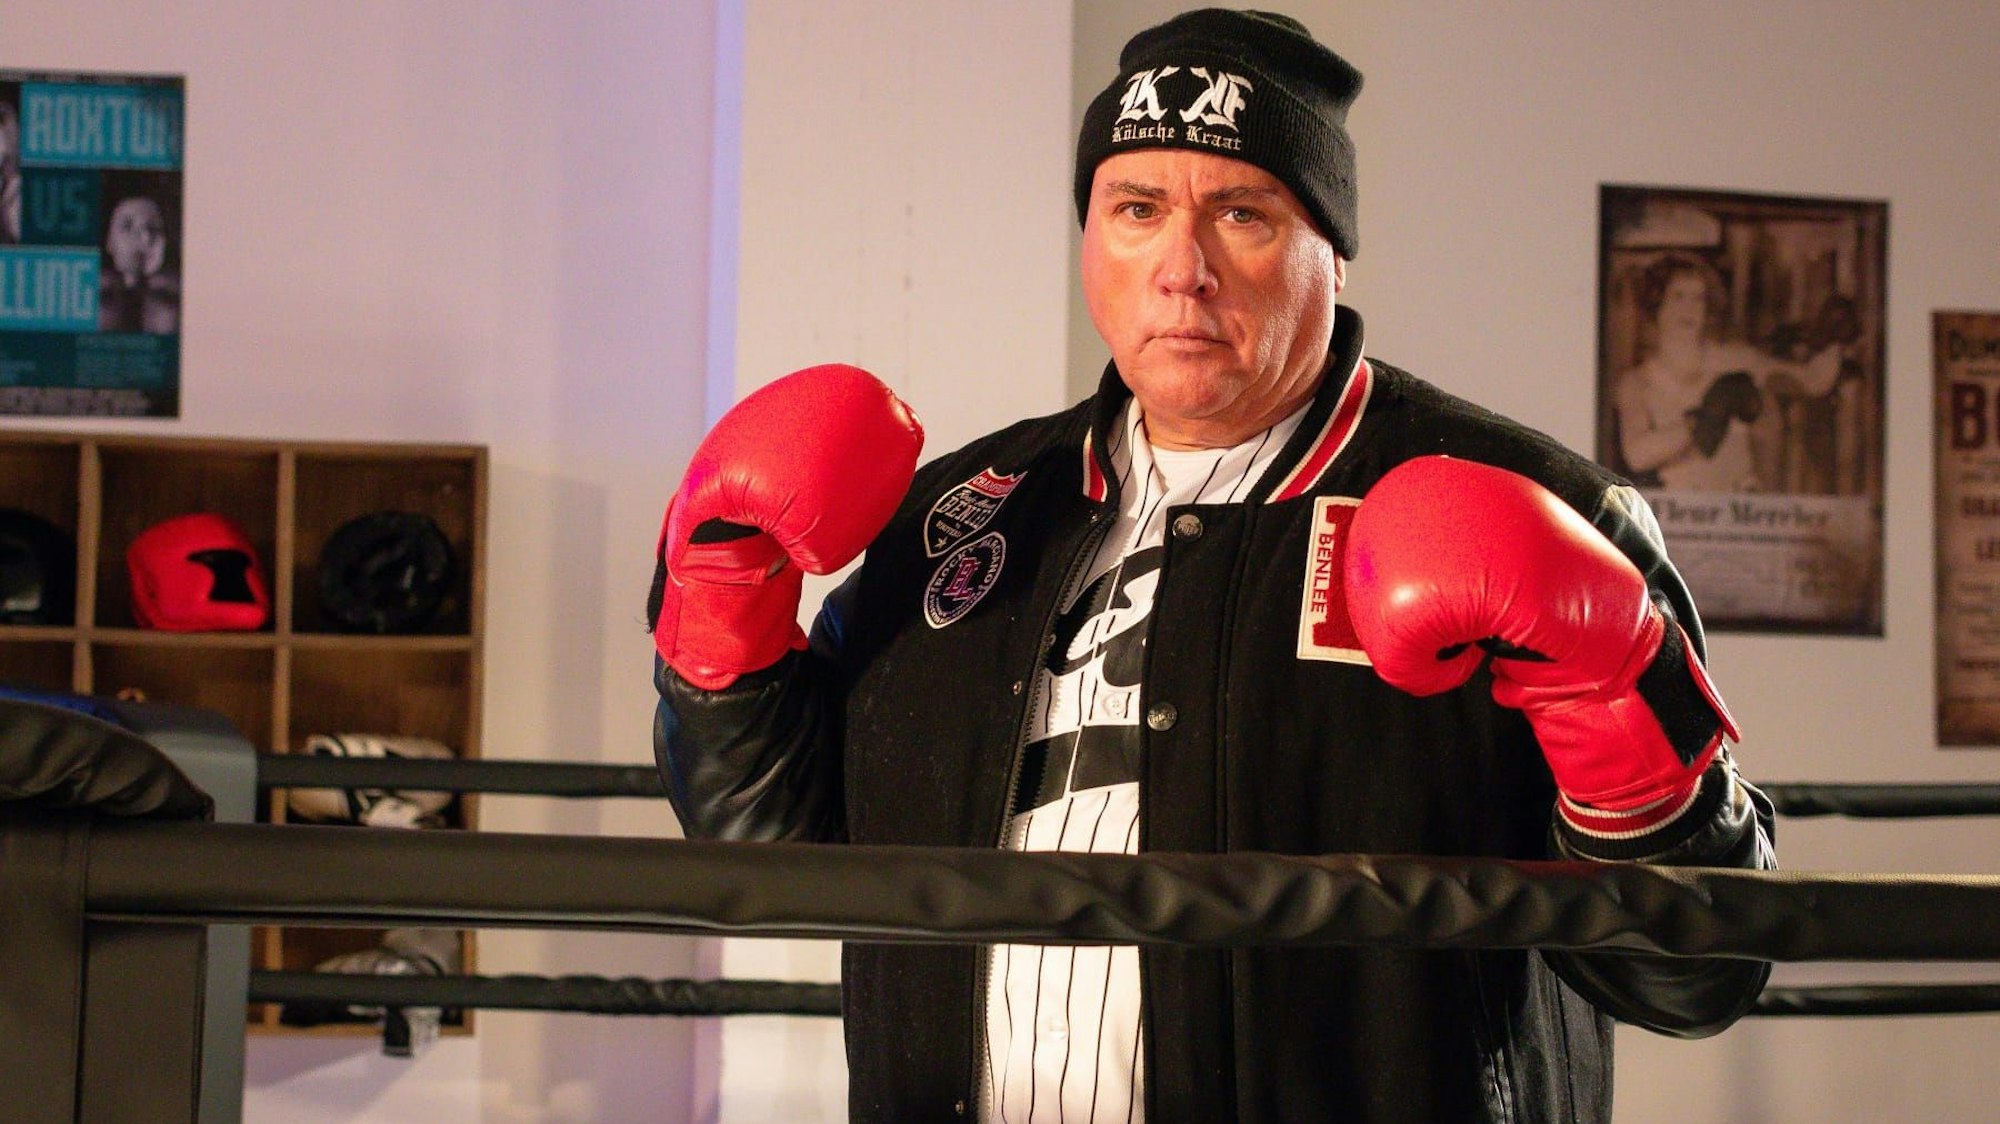 Ramon Ademes steht mit Boxhandschuhen im Ring.